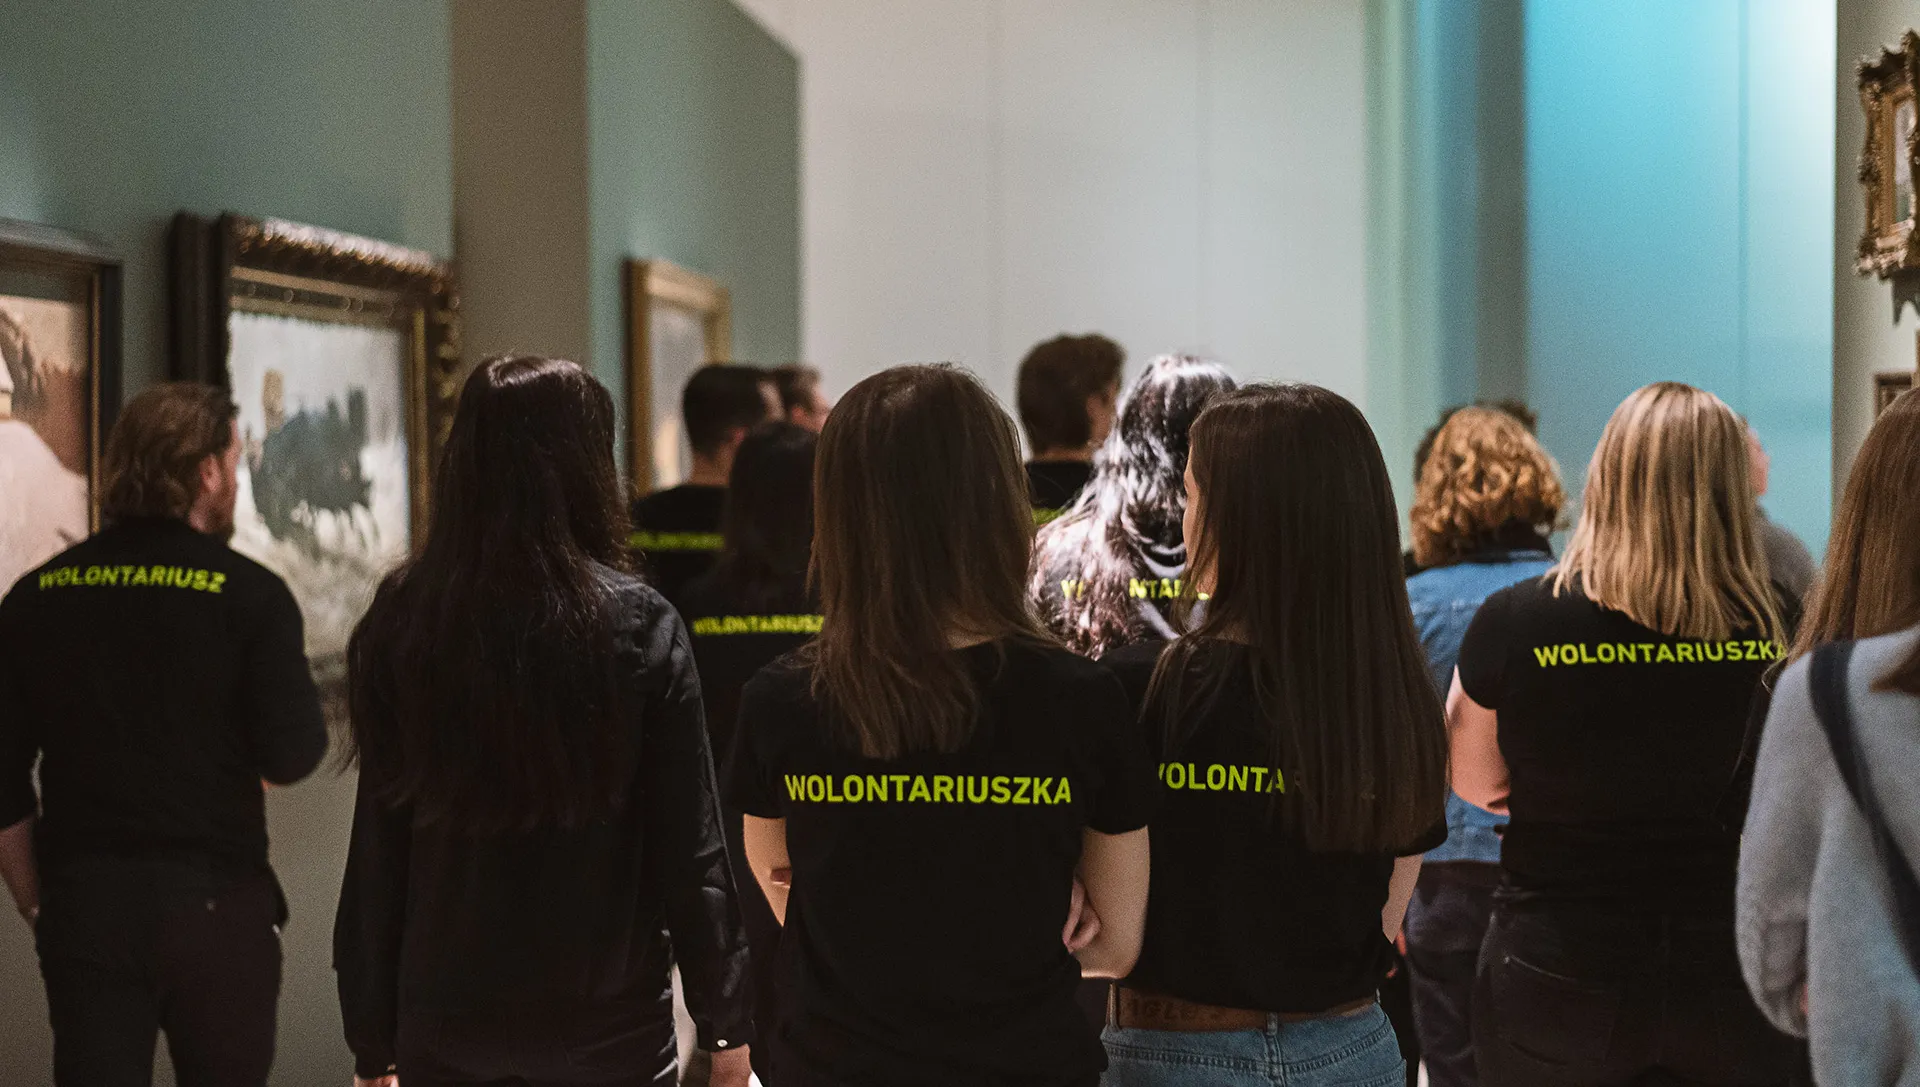 Grupa ludzi w czarnych koszulkach z neonowym napisem wolontariusz lub wolontariuszka.